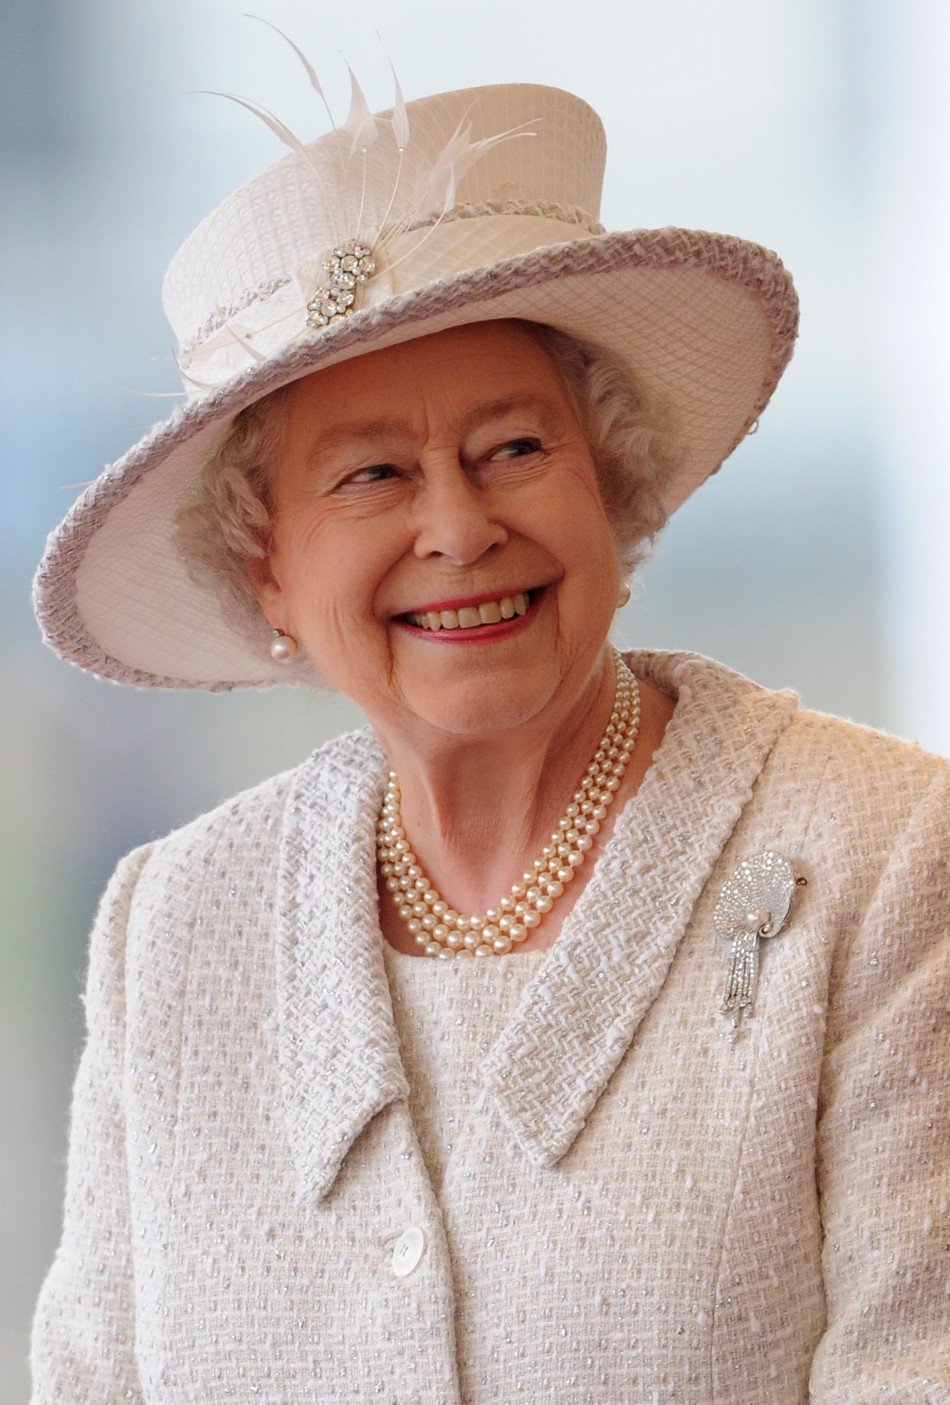 Queen Elizabeth II Elizabeth II Photo